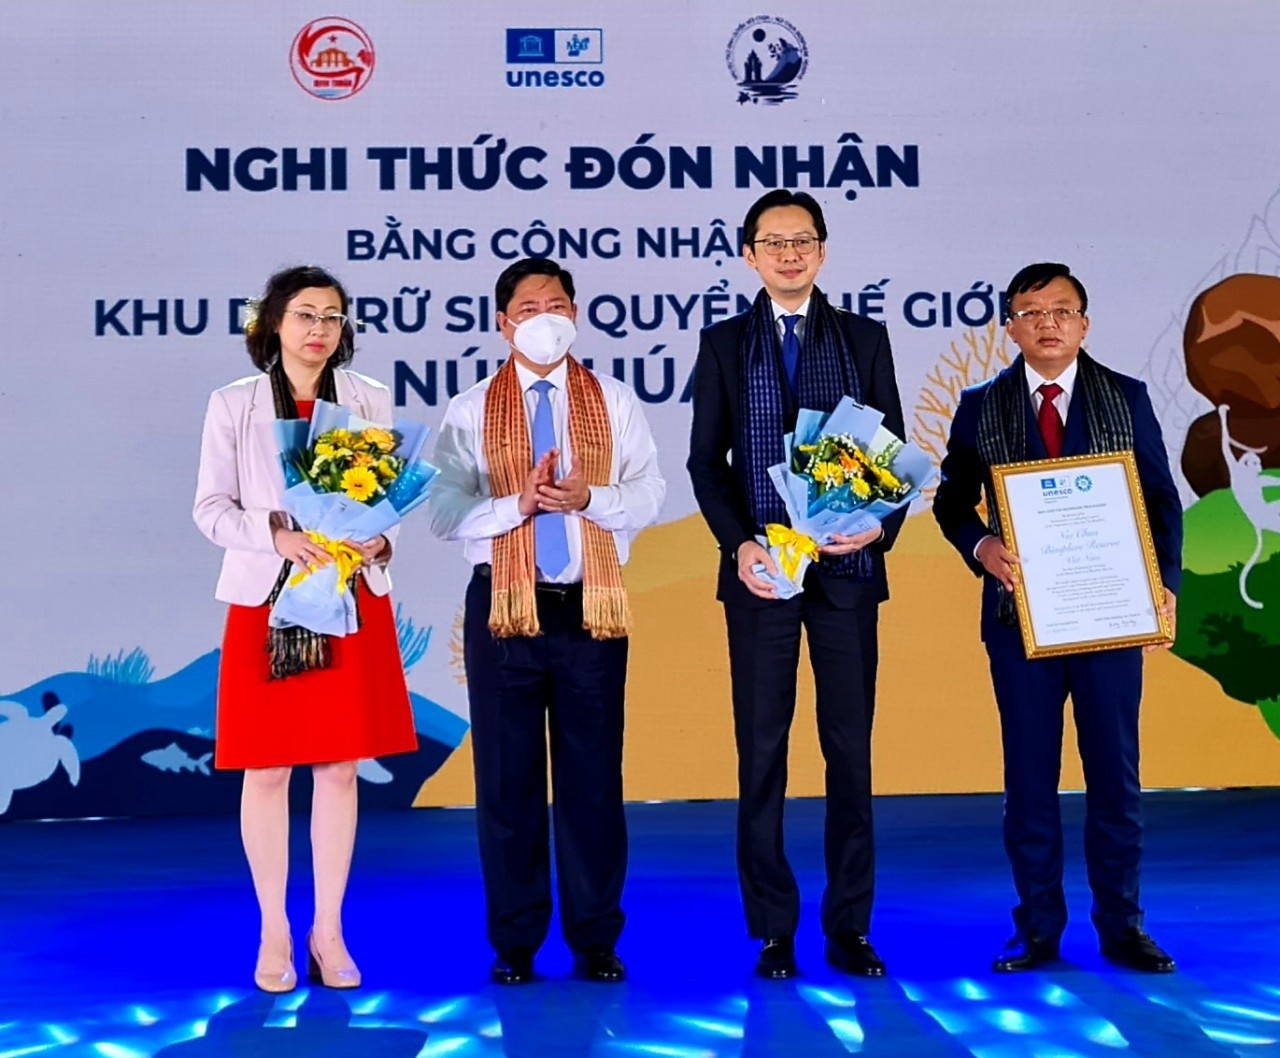 Đại diện Bộ Ngoại giao trao tặng Bằng công nhận Khu dự trữ sinh quyển thế giới Núi Chúa từ UNESCO cho UBND tỉnh Ninh Thuận (ảnh: Thiện Nhân).